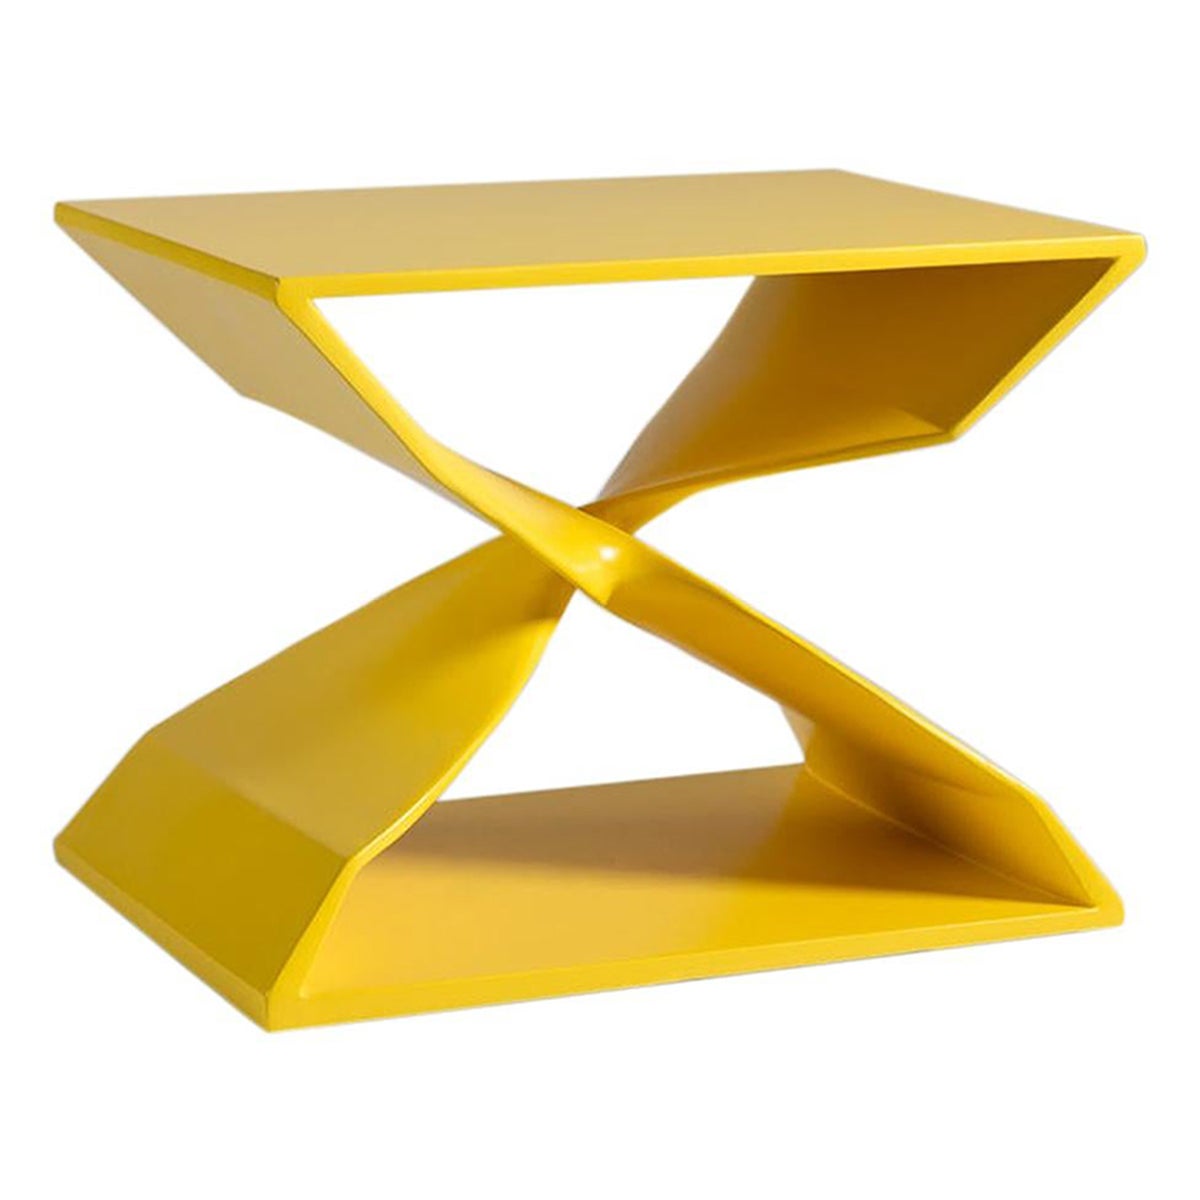 Carol Egan, Skulpturaler Hocker aus gelbem Glasfaser, Vereinigte Staaten, 2012